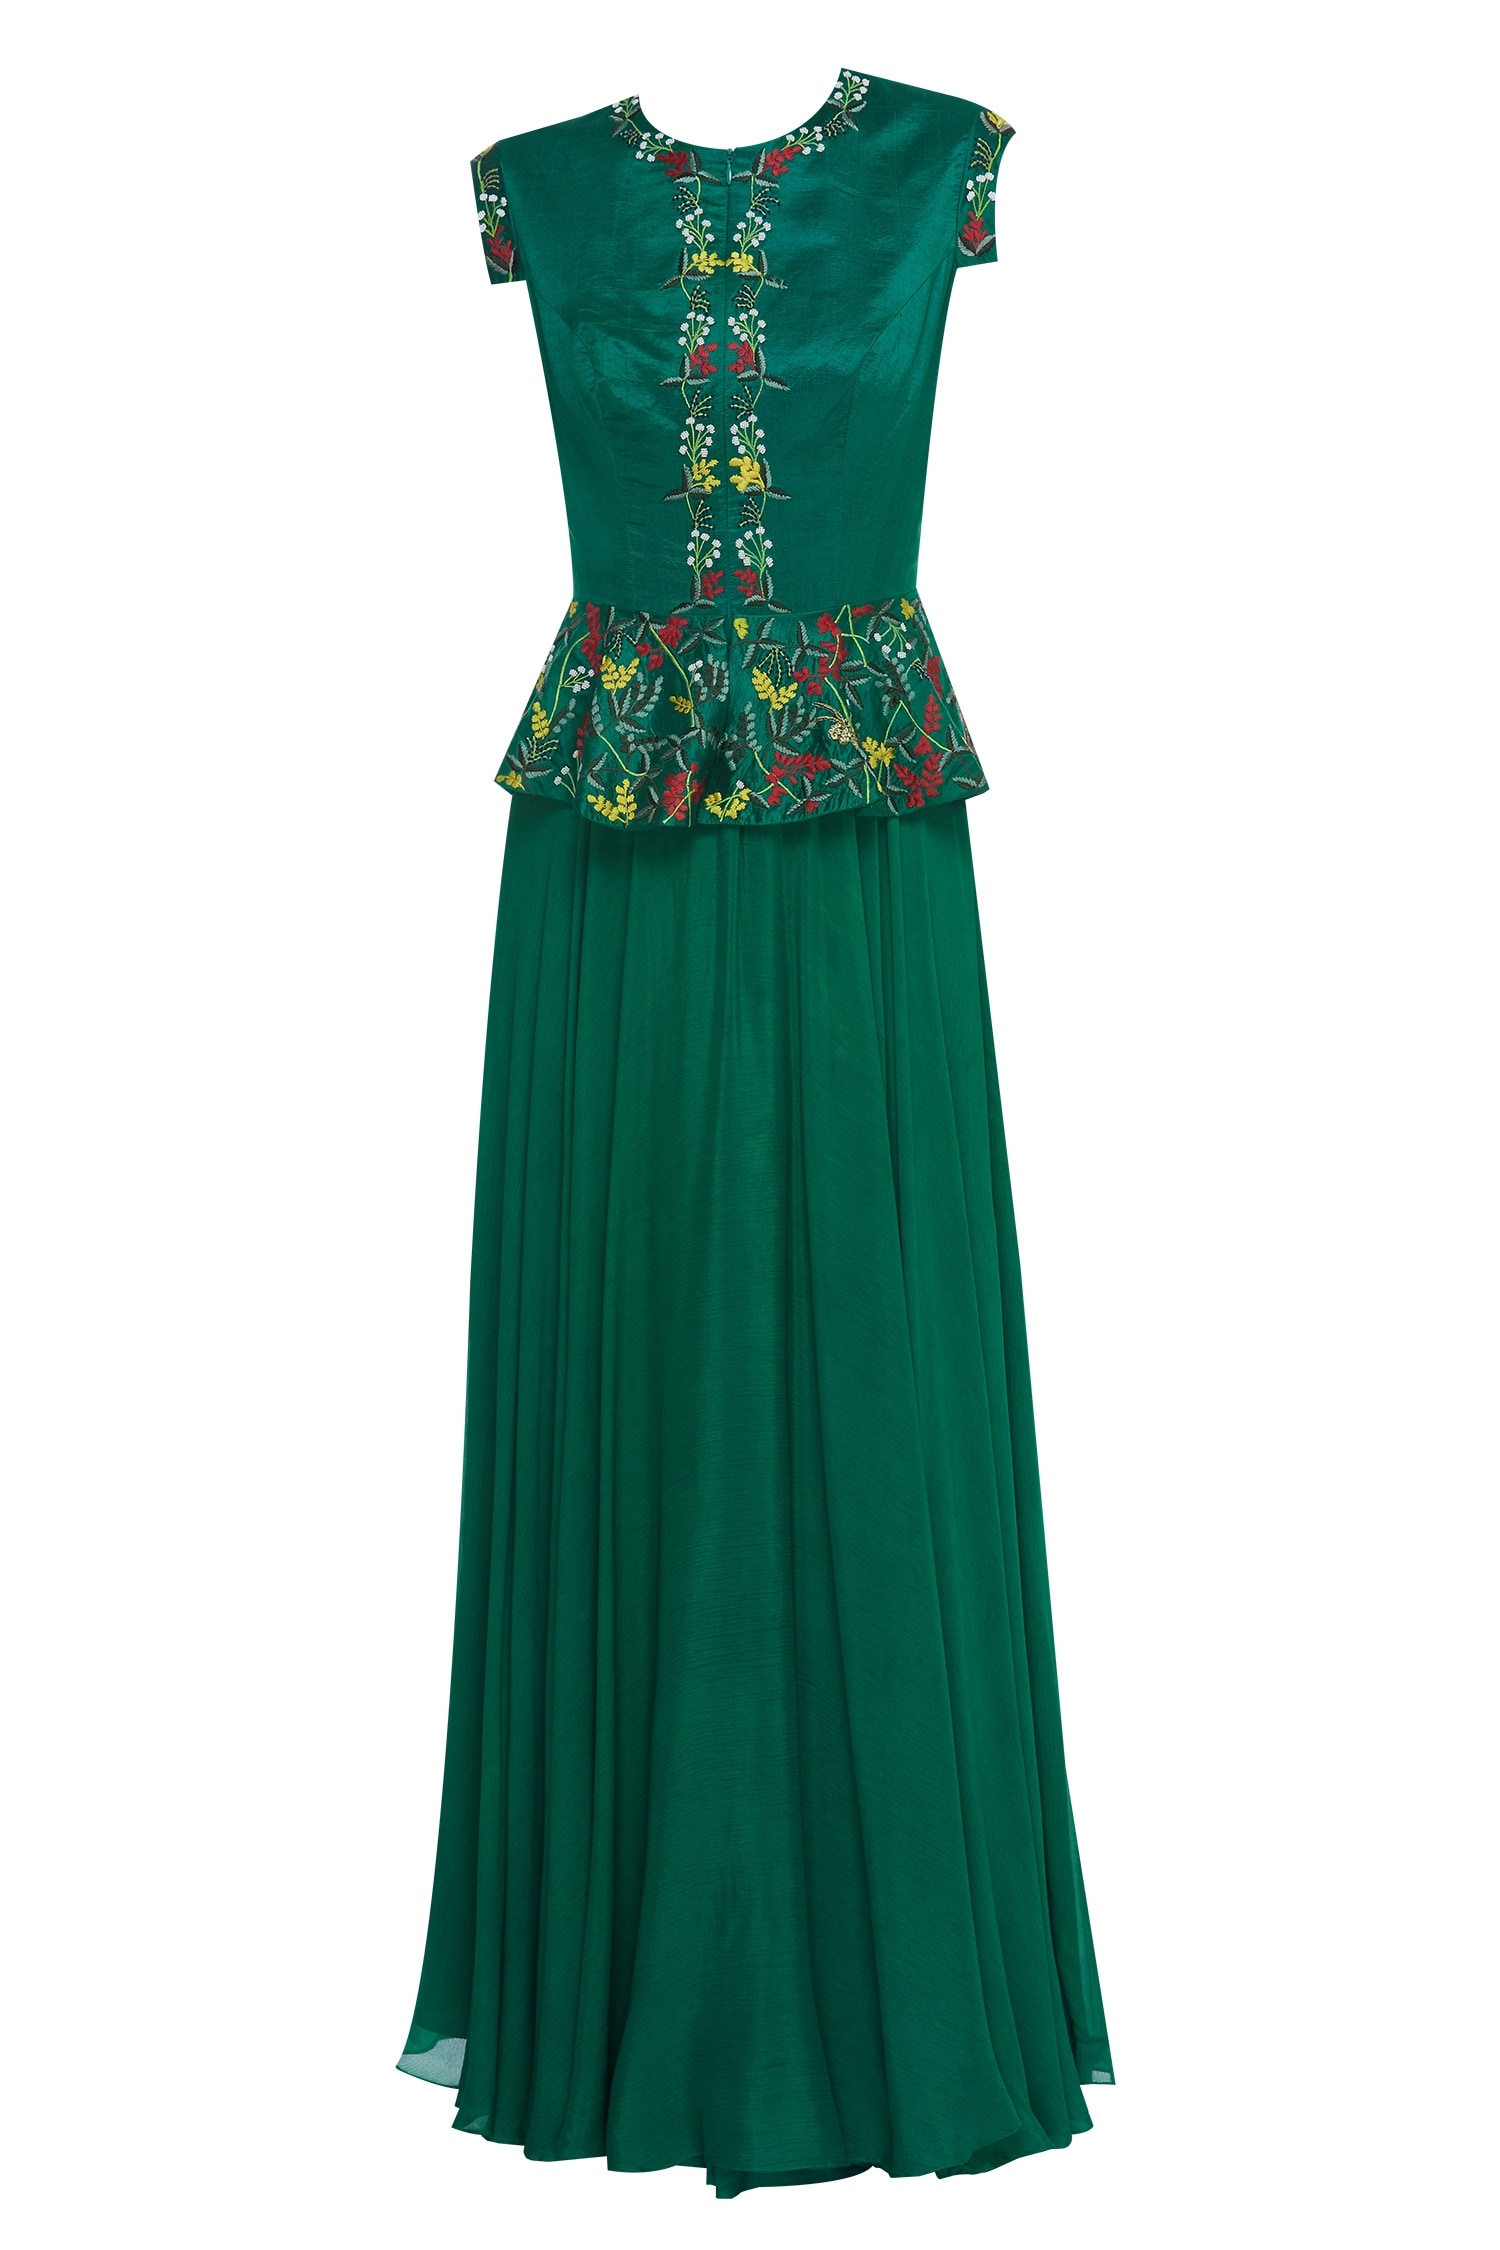 Buy Desert Shine by Sulochana Jangir Green Embroidered Peplum Maxi ...